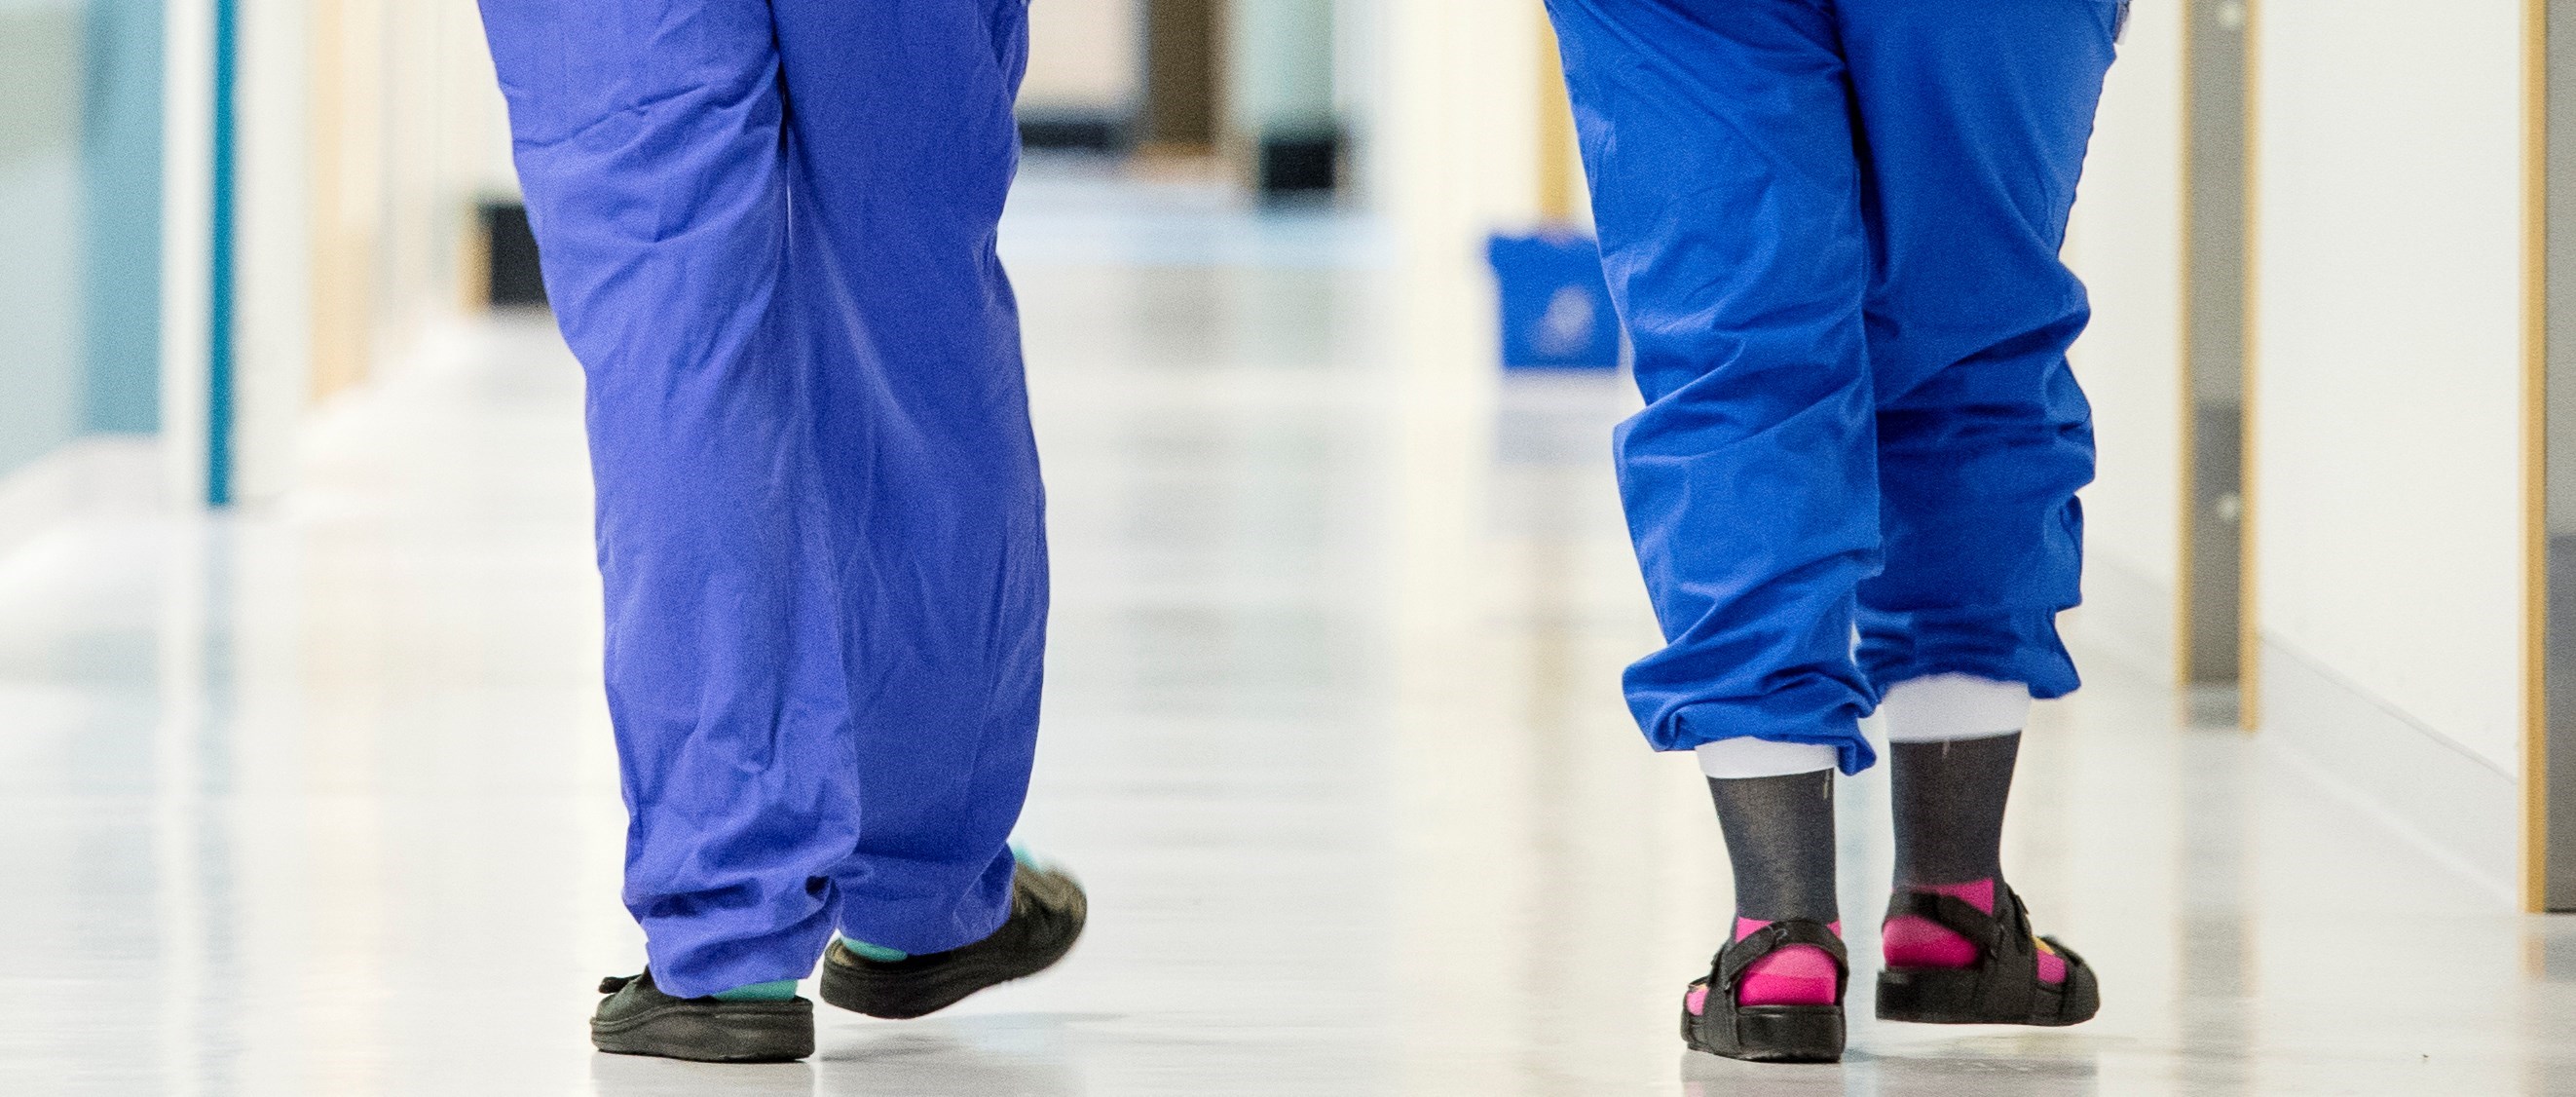 Benen på två hälso- och sjukvårdsarbetare i blå sjukhuskläder går från kameran i en korridor